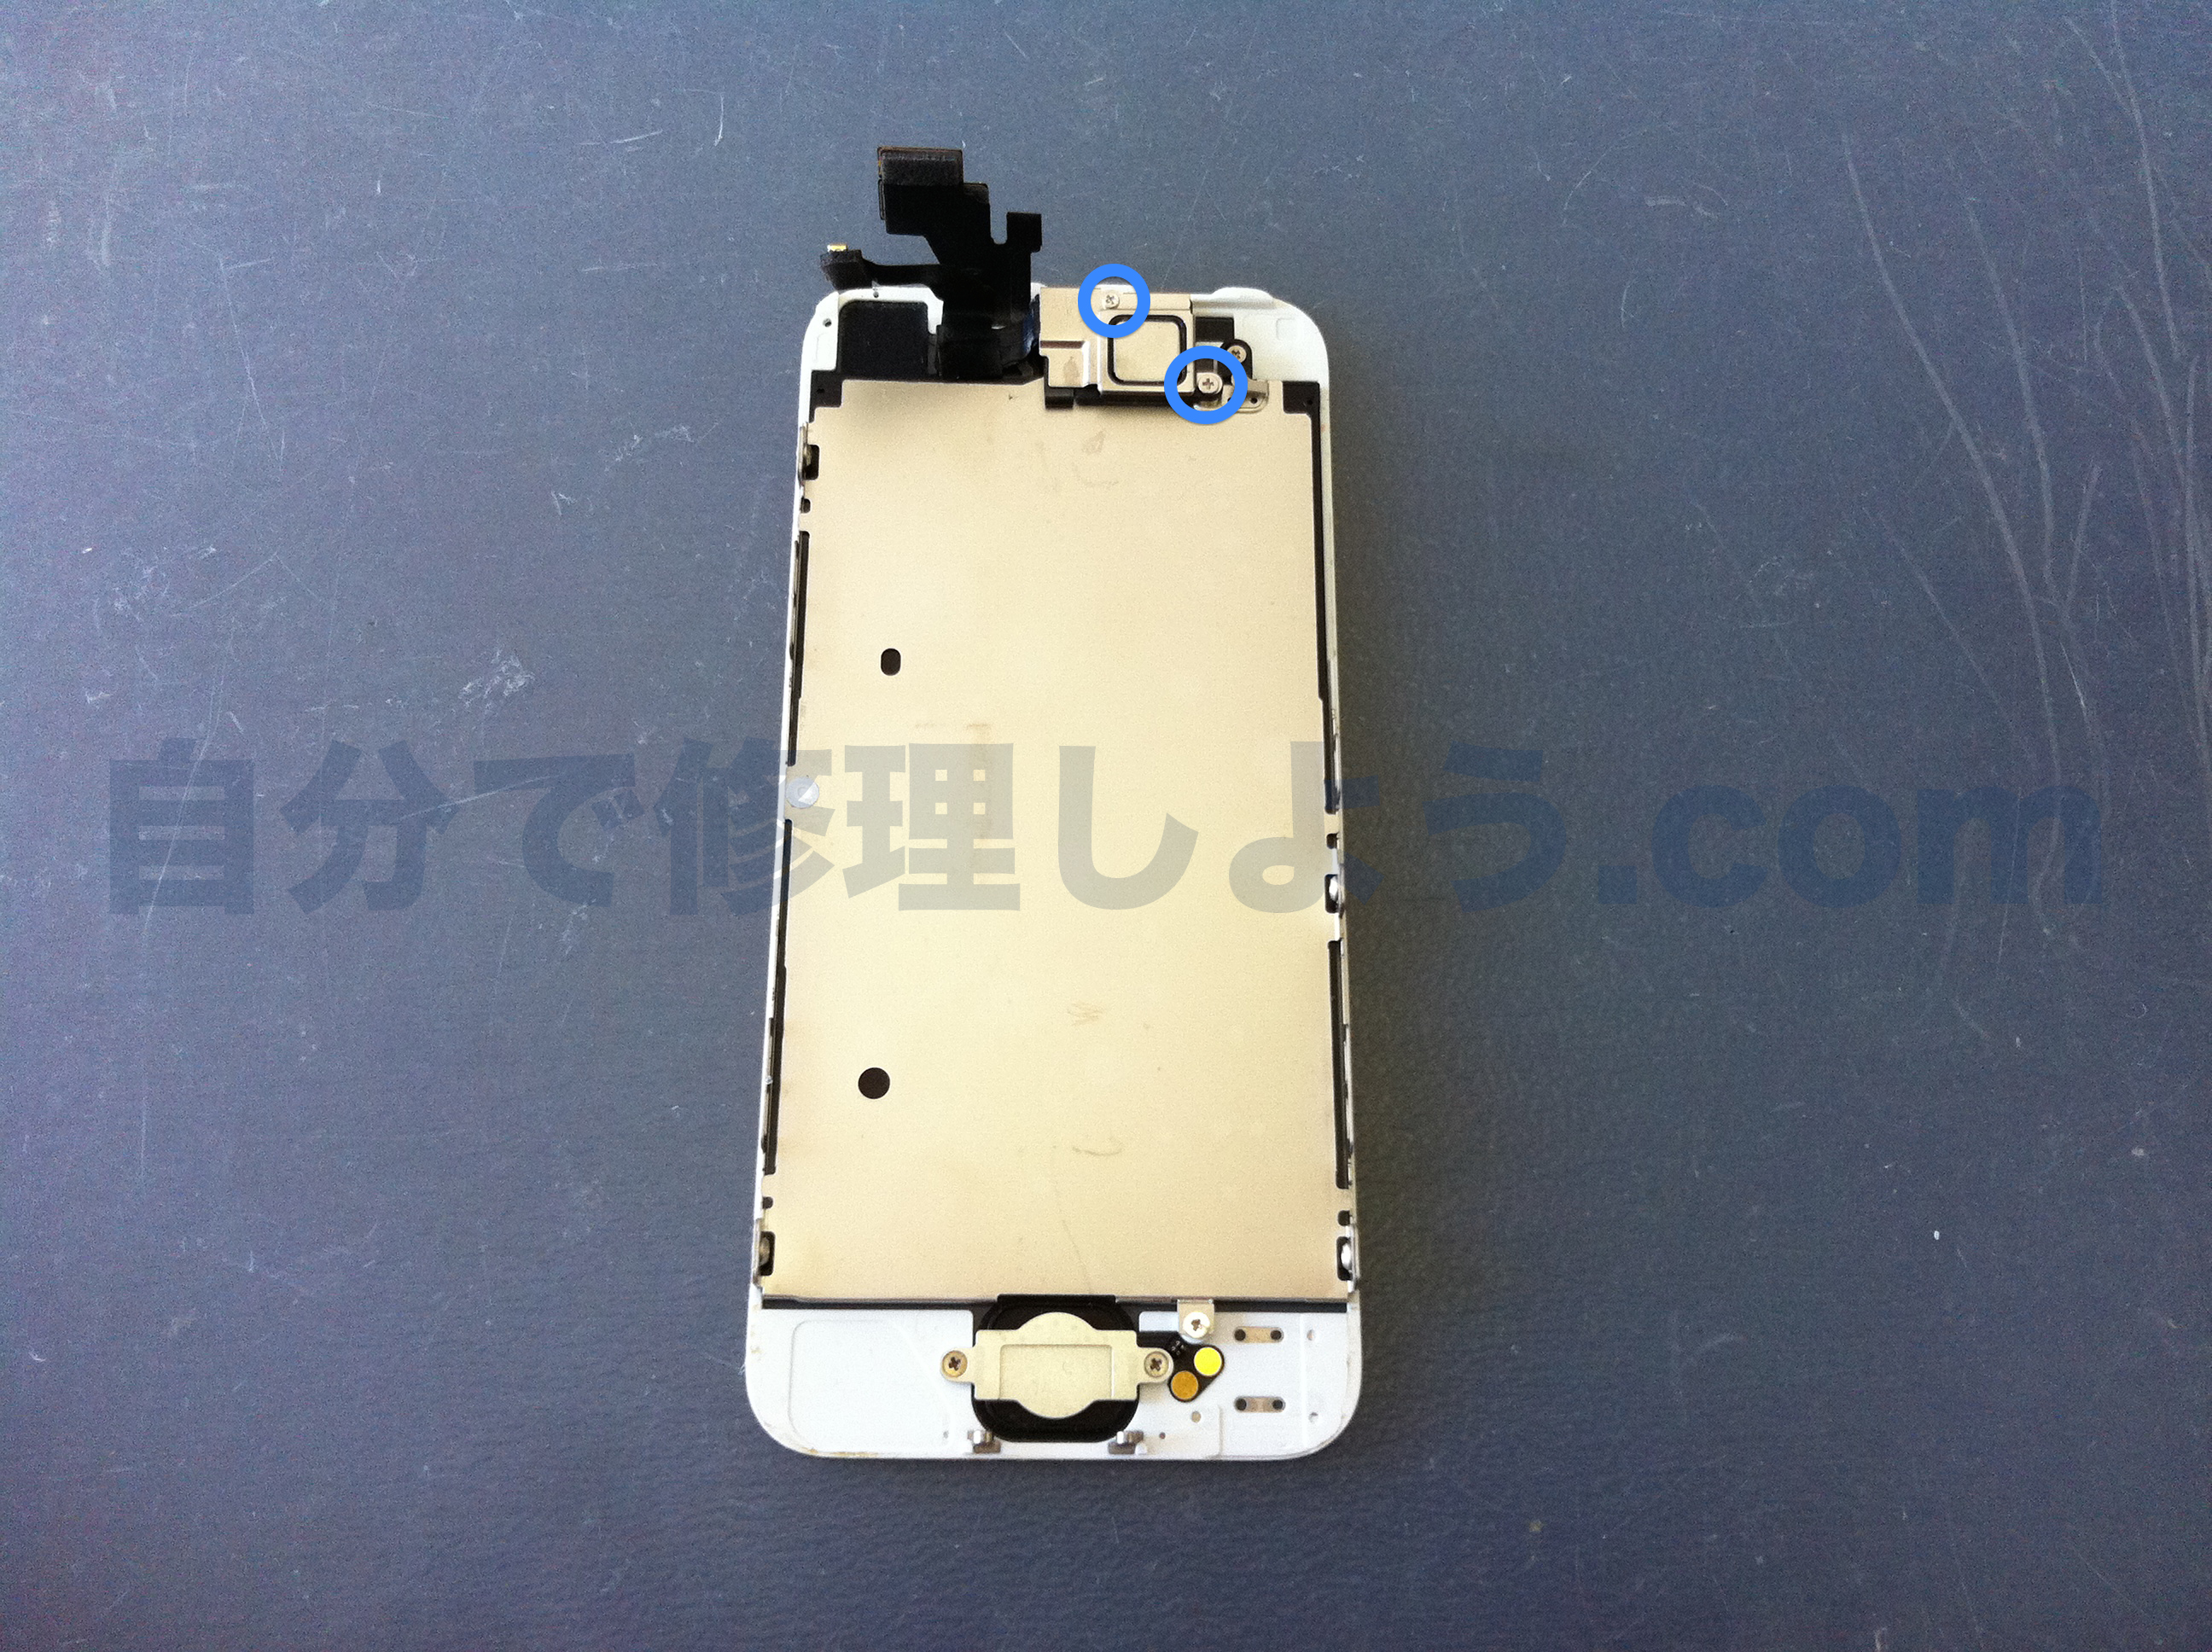 iPhone5ガラス割れ、タッチパネル、液晶故障修理 | iPhone修理方法